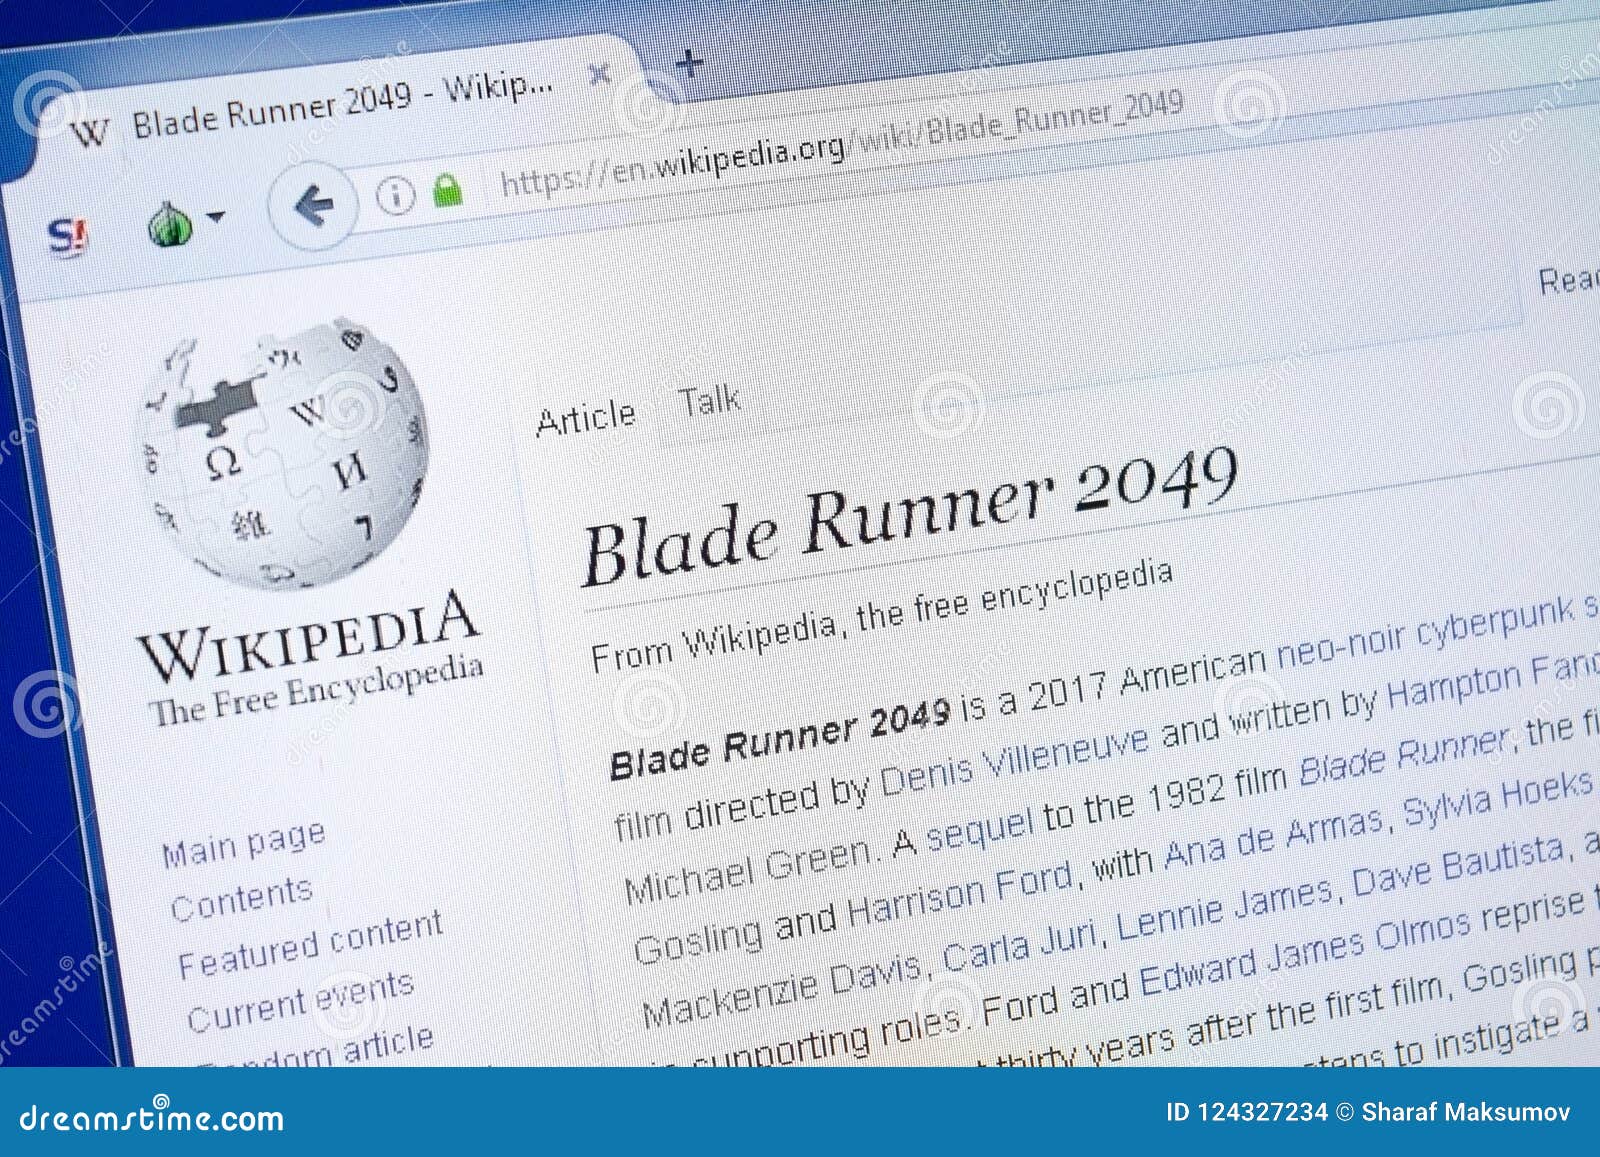 Blade Runner 2049 - Wikipedia